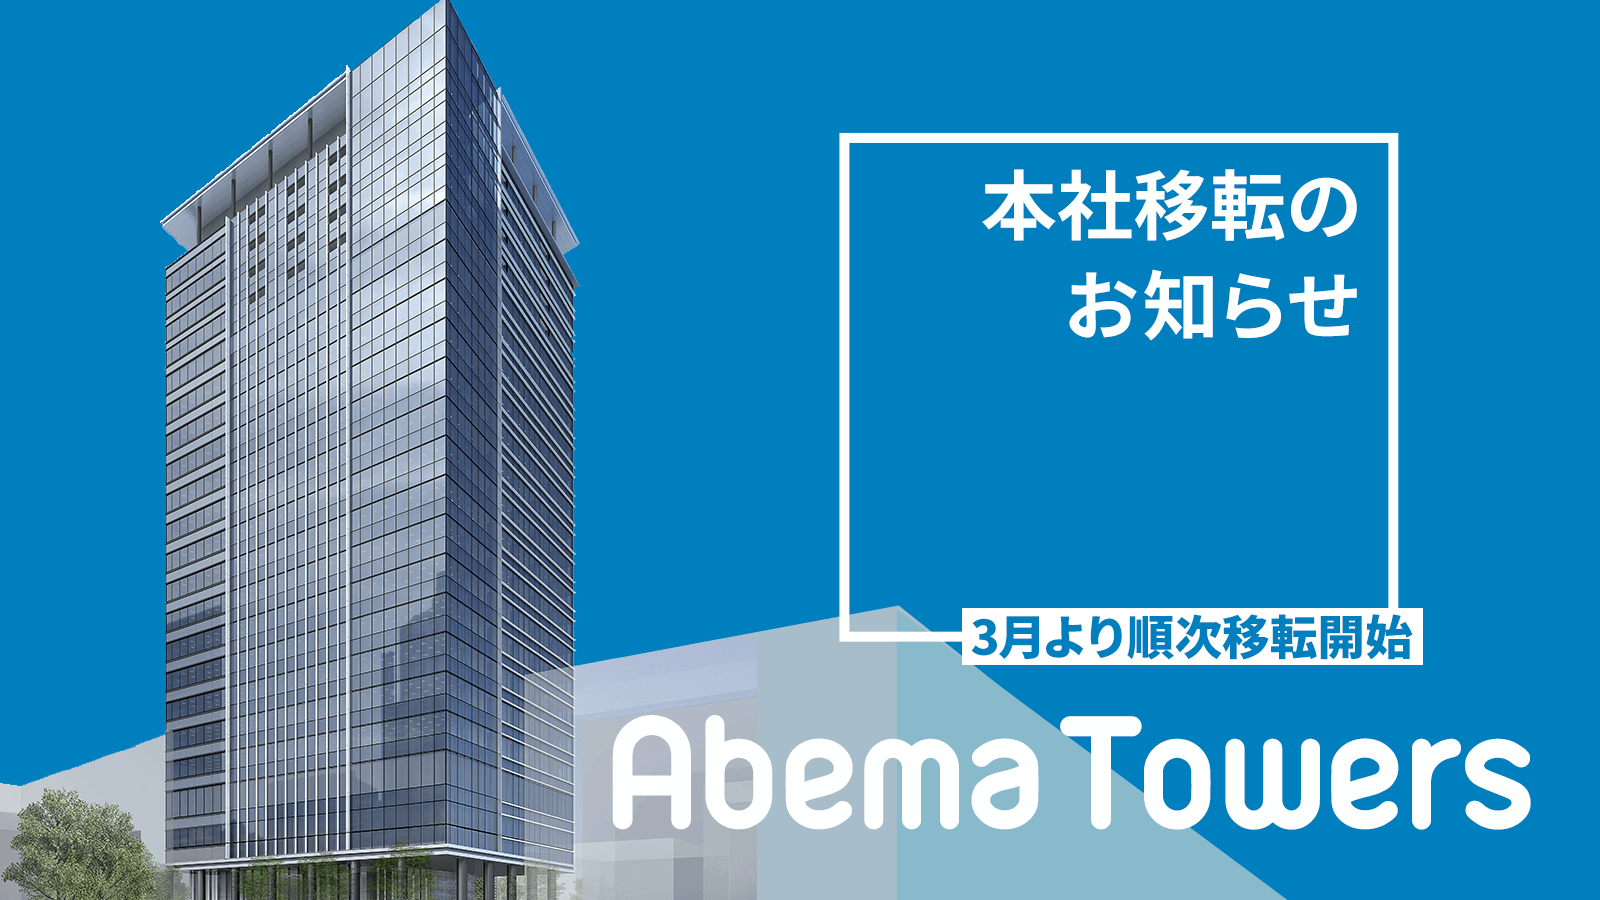 Abema Towers